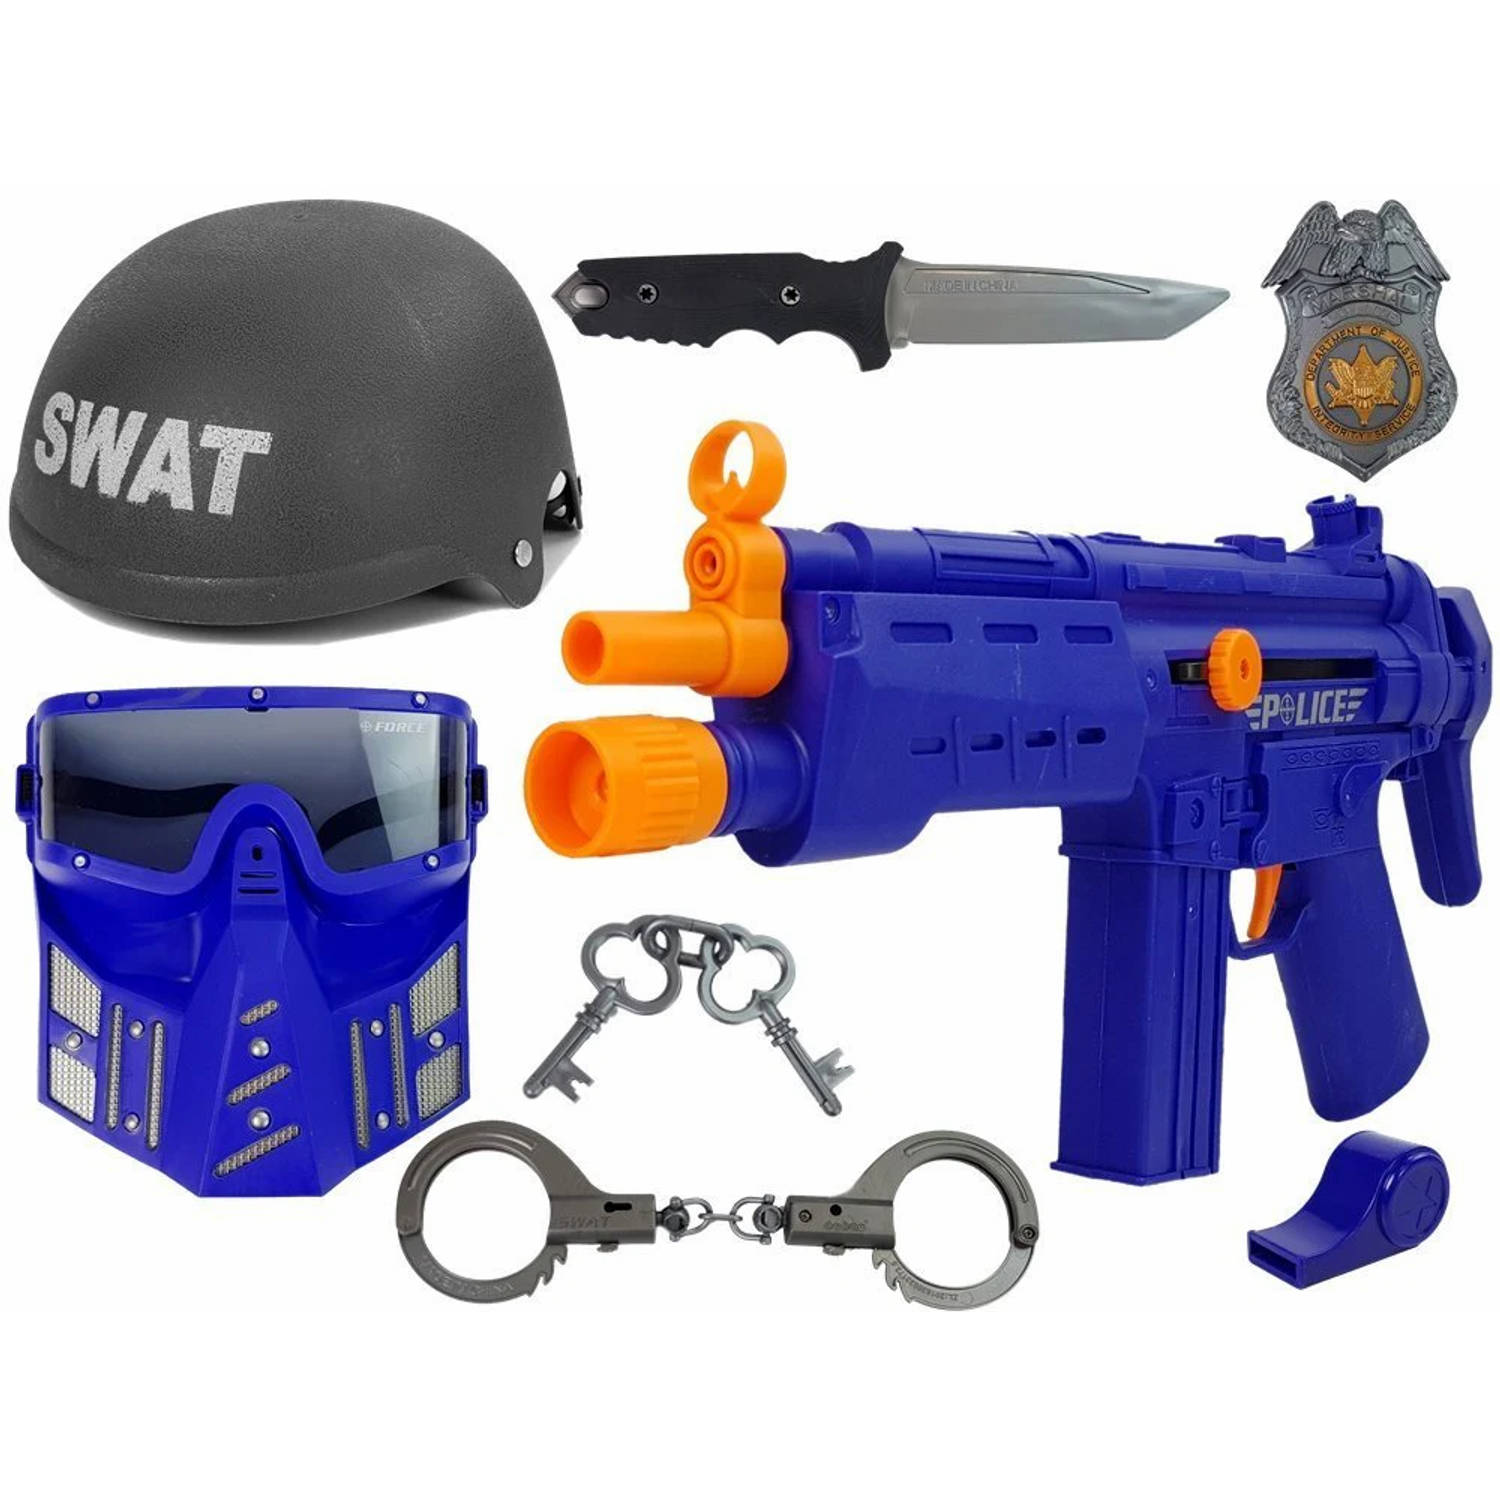 Luxe politie speelset voor kinderen - Inclusief helm, Pistool, Badge, handboeien met sleutel, mes en fluitje - Swat speelgoed